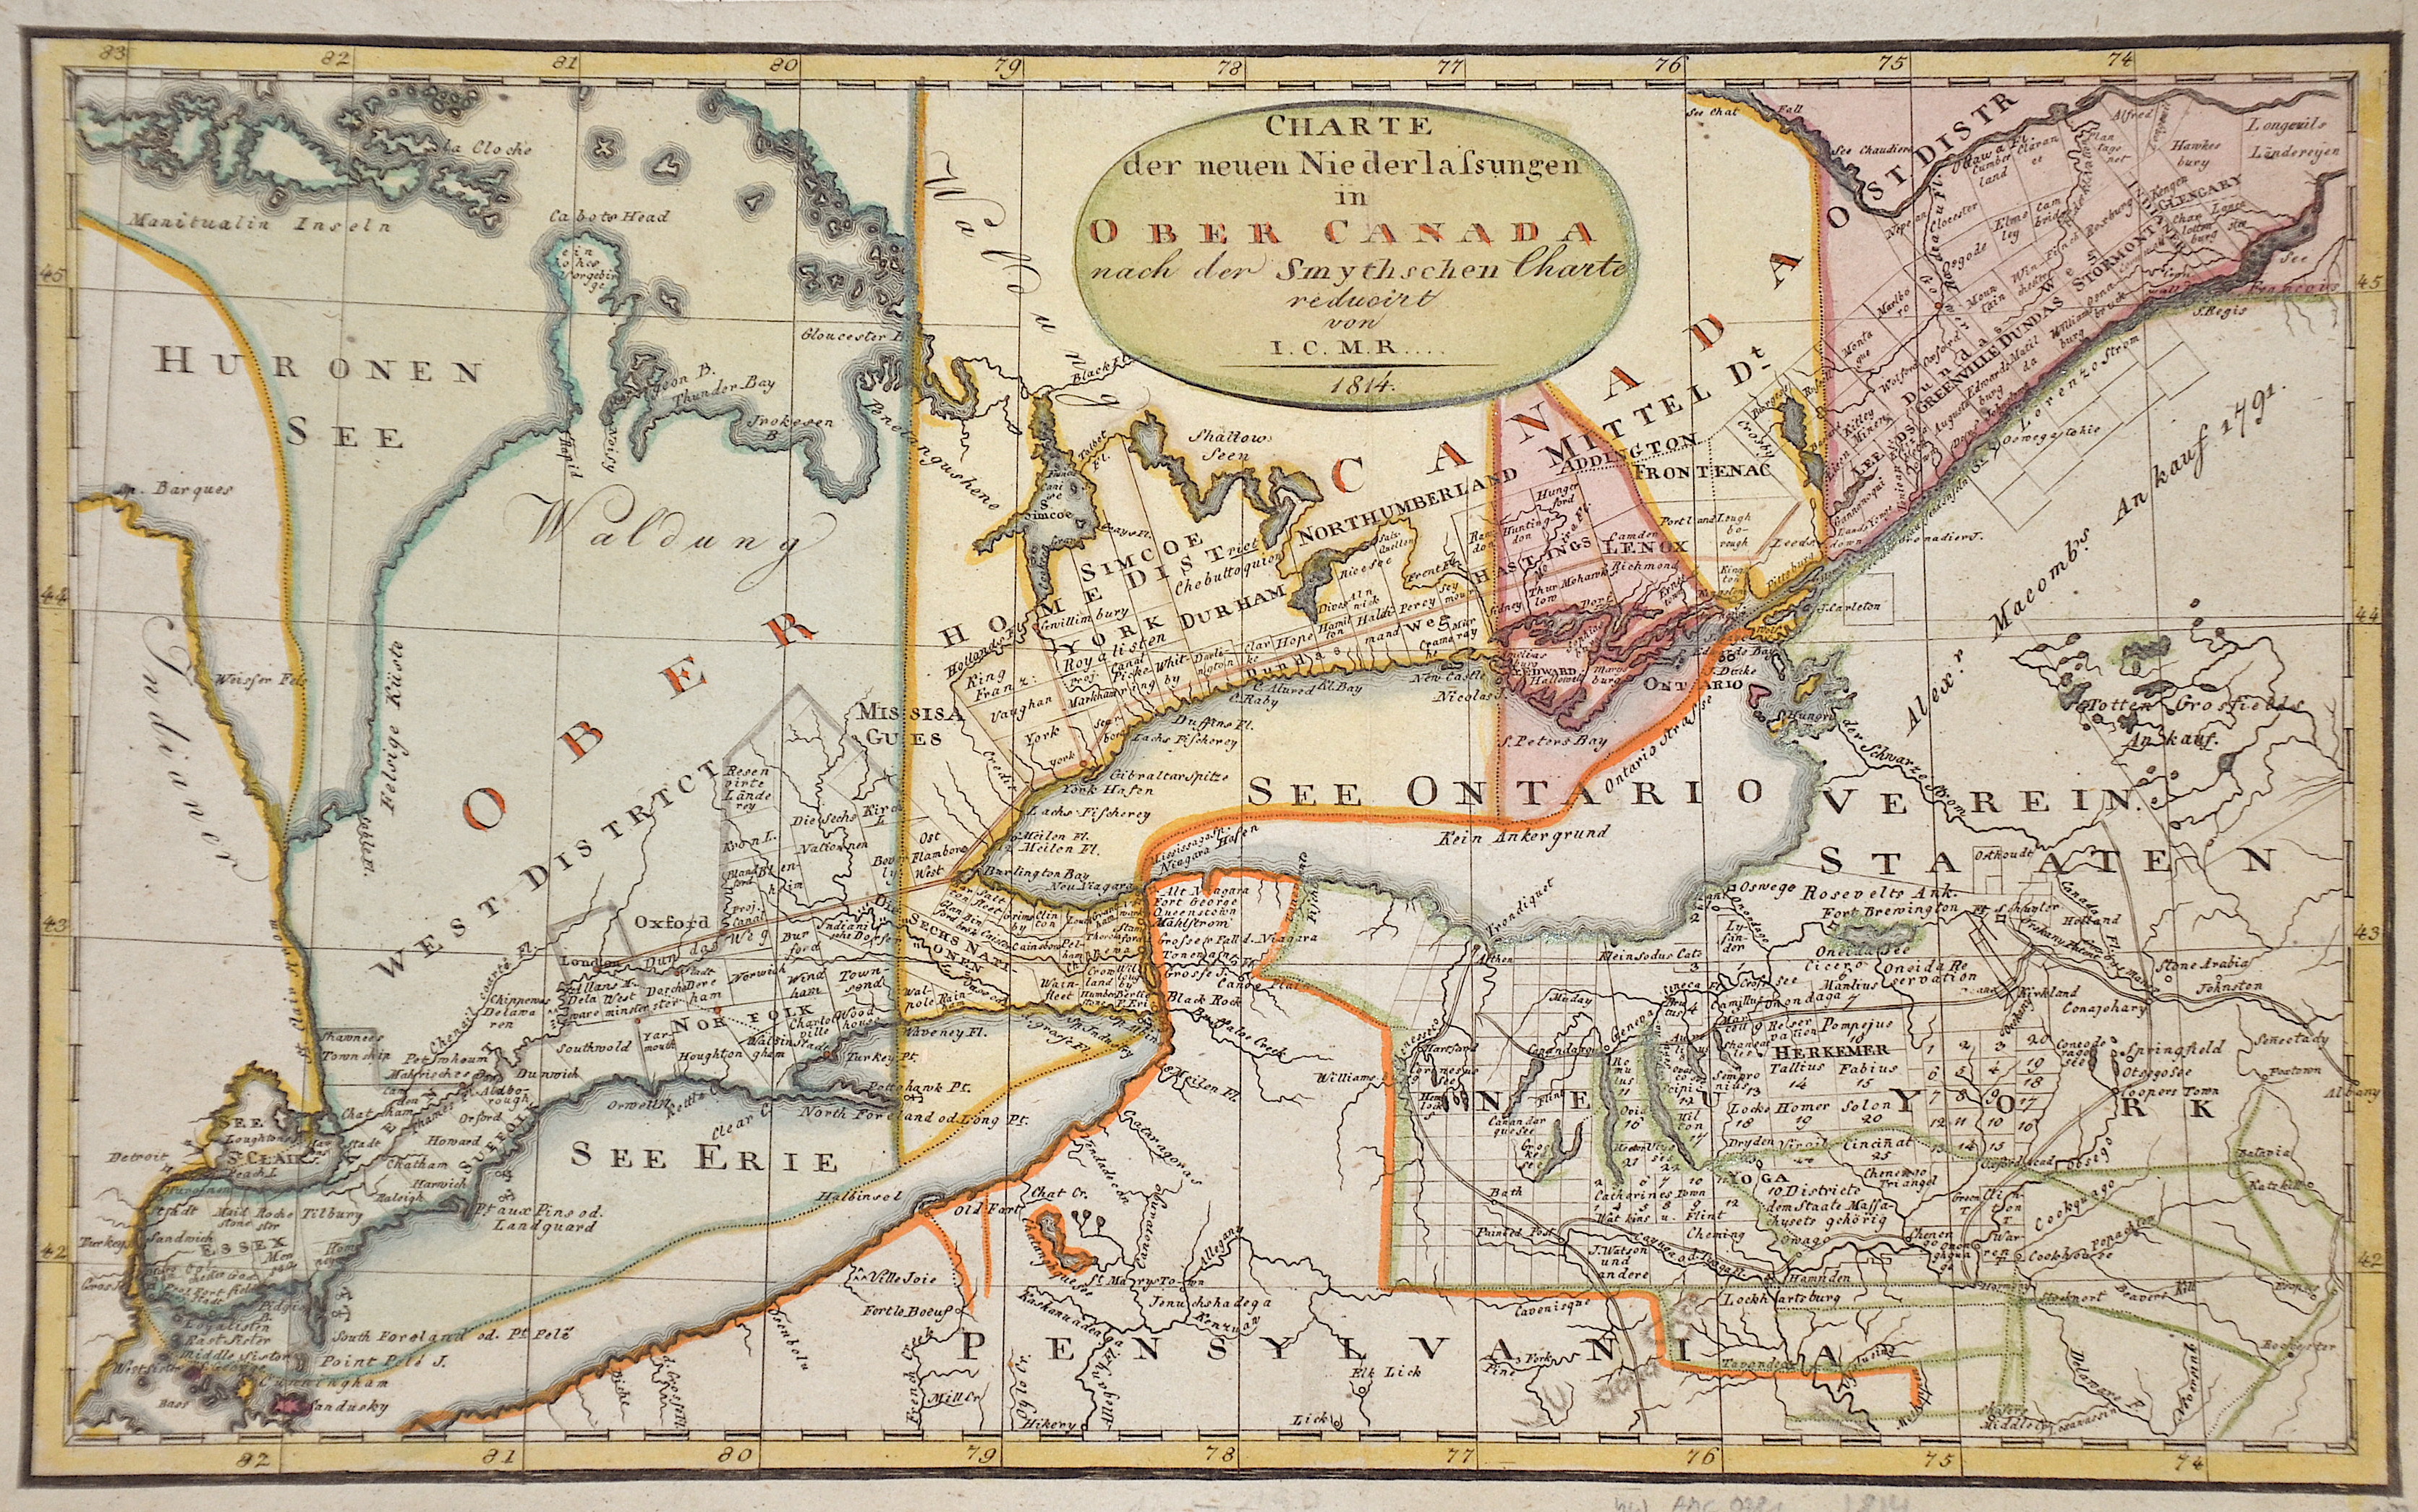 I.C.M.R  Charte der neuen Niederlassungen in Ober Canada nach der Smythschen Charte